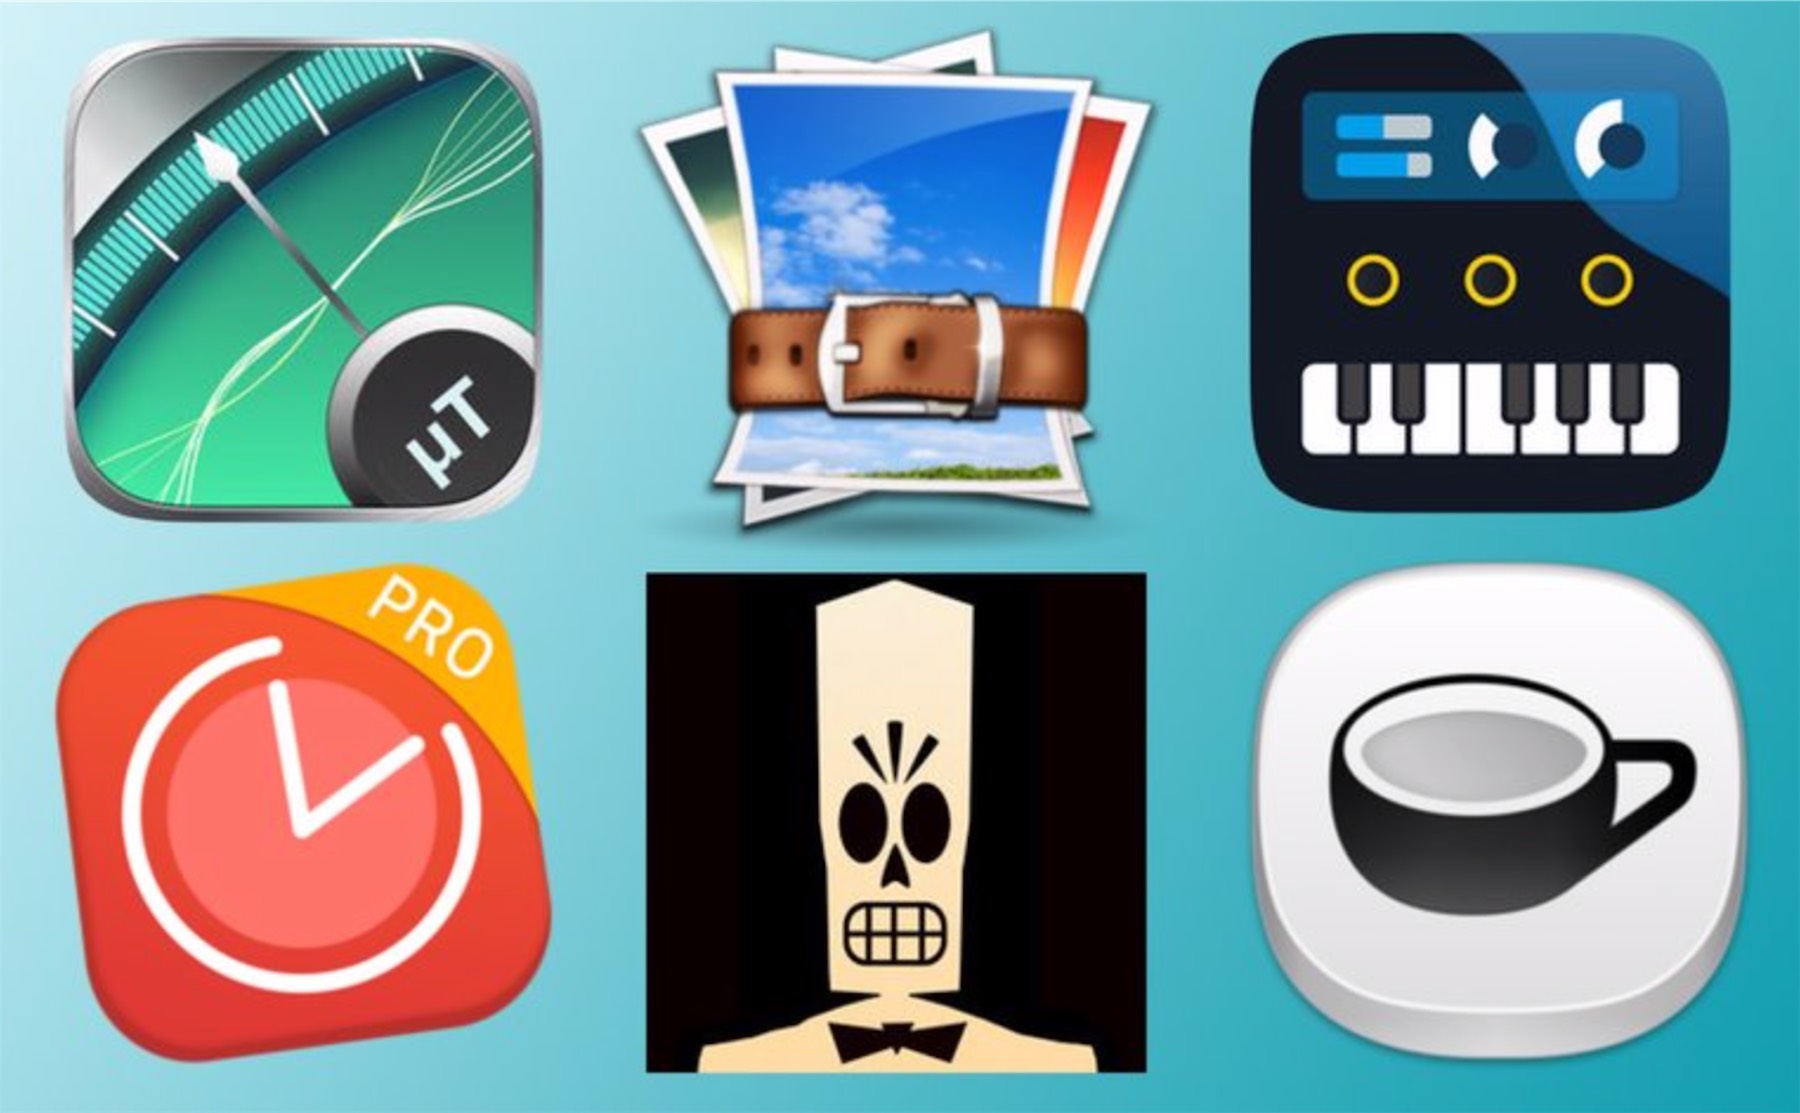 Promocyjne aplikacje dla iOS i macOS.